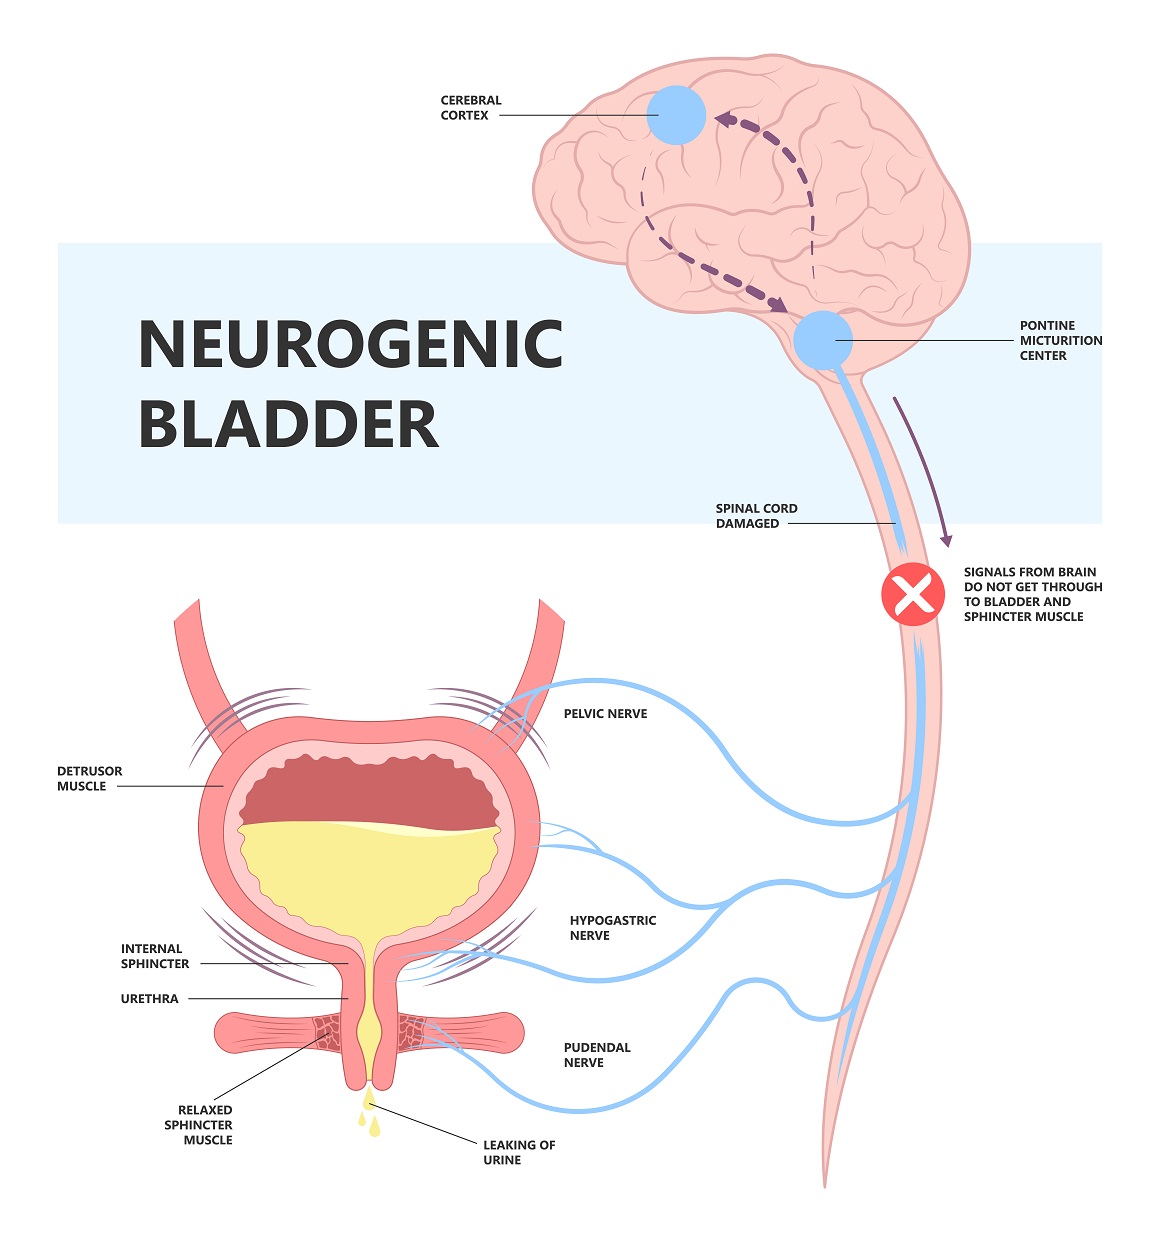 Neurogena (neuropatska) inkontinencija ili neurogeni mjehur